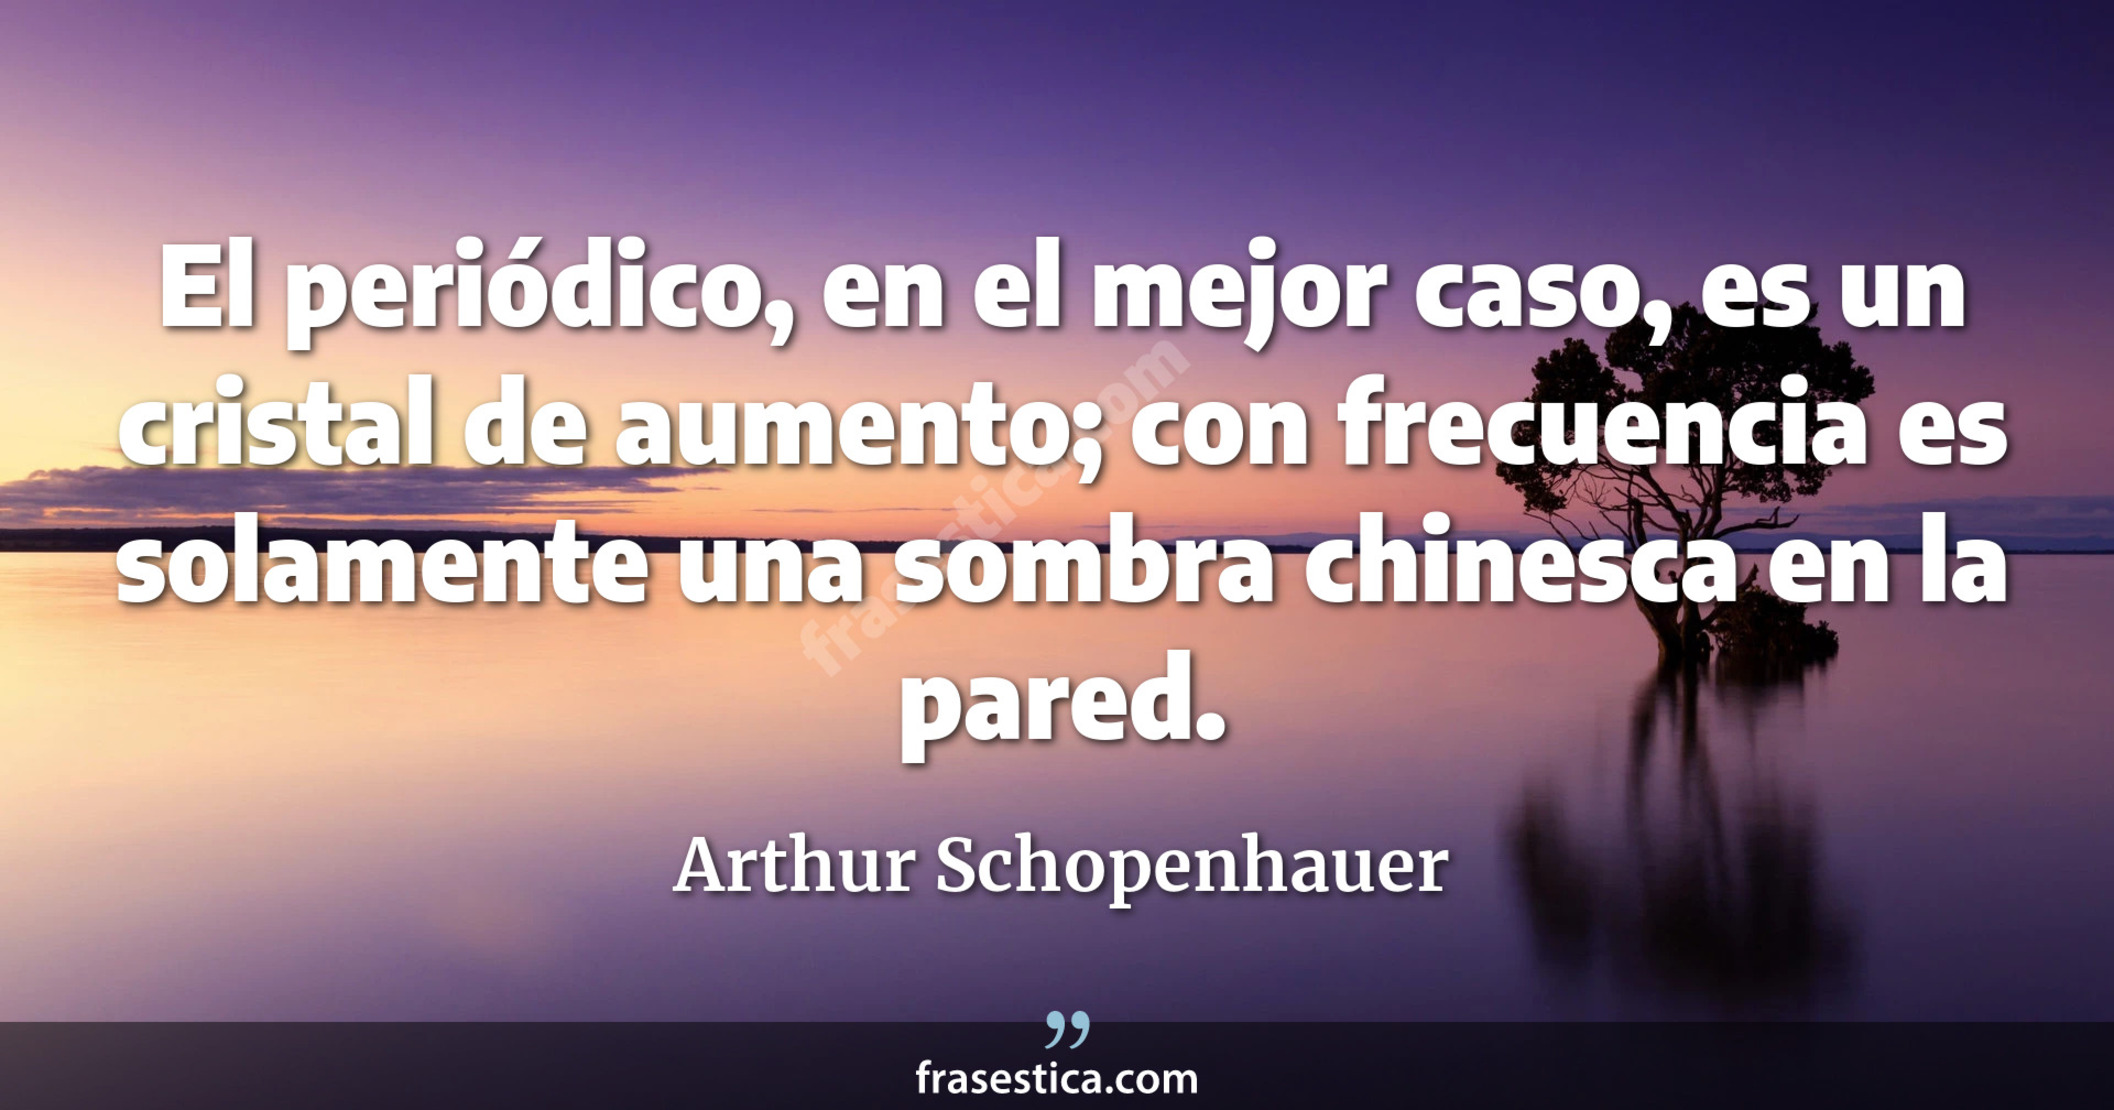 El periódico, en el mejor caso, es un cristal de aumento; con frecuencia es solamente una sombra chinesca en la pared. - Arthur Schopenhauer